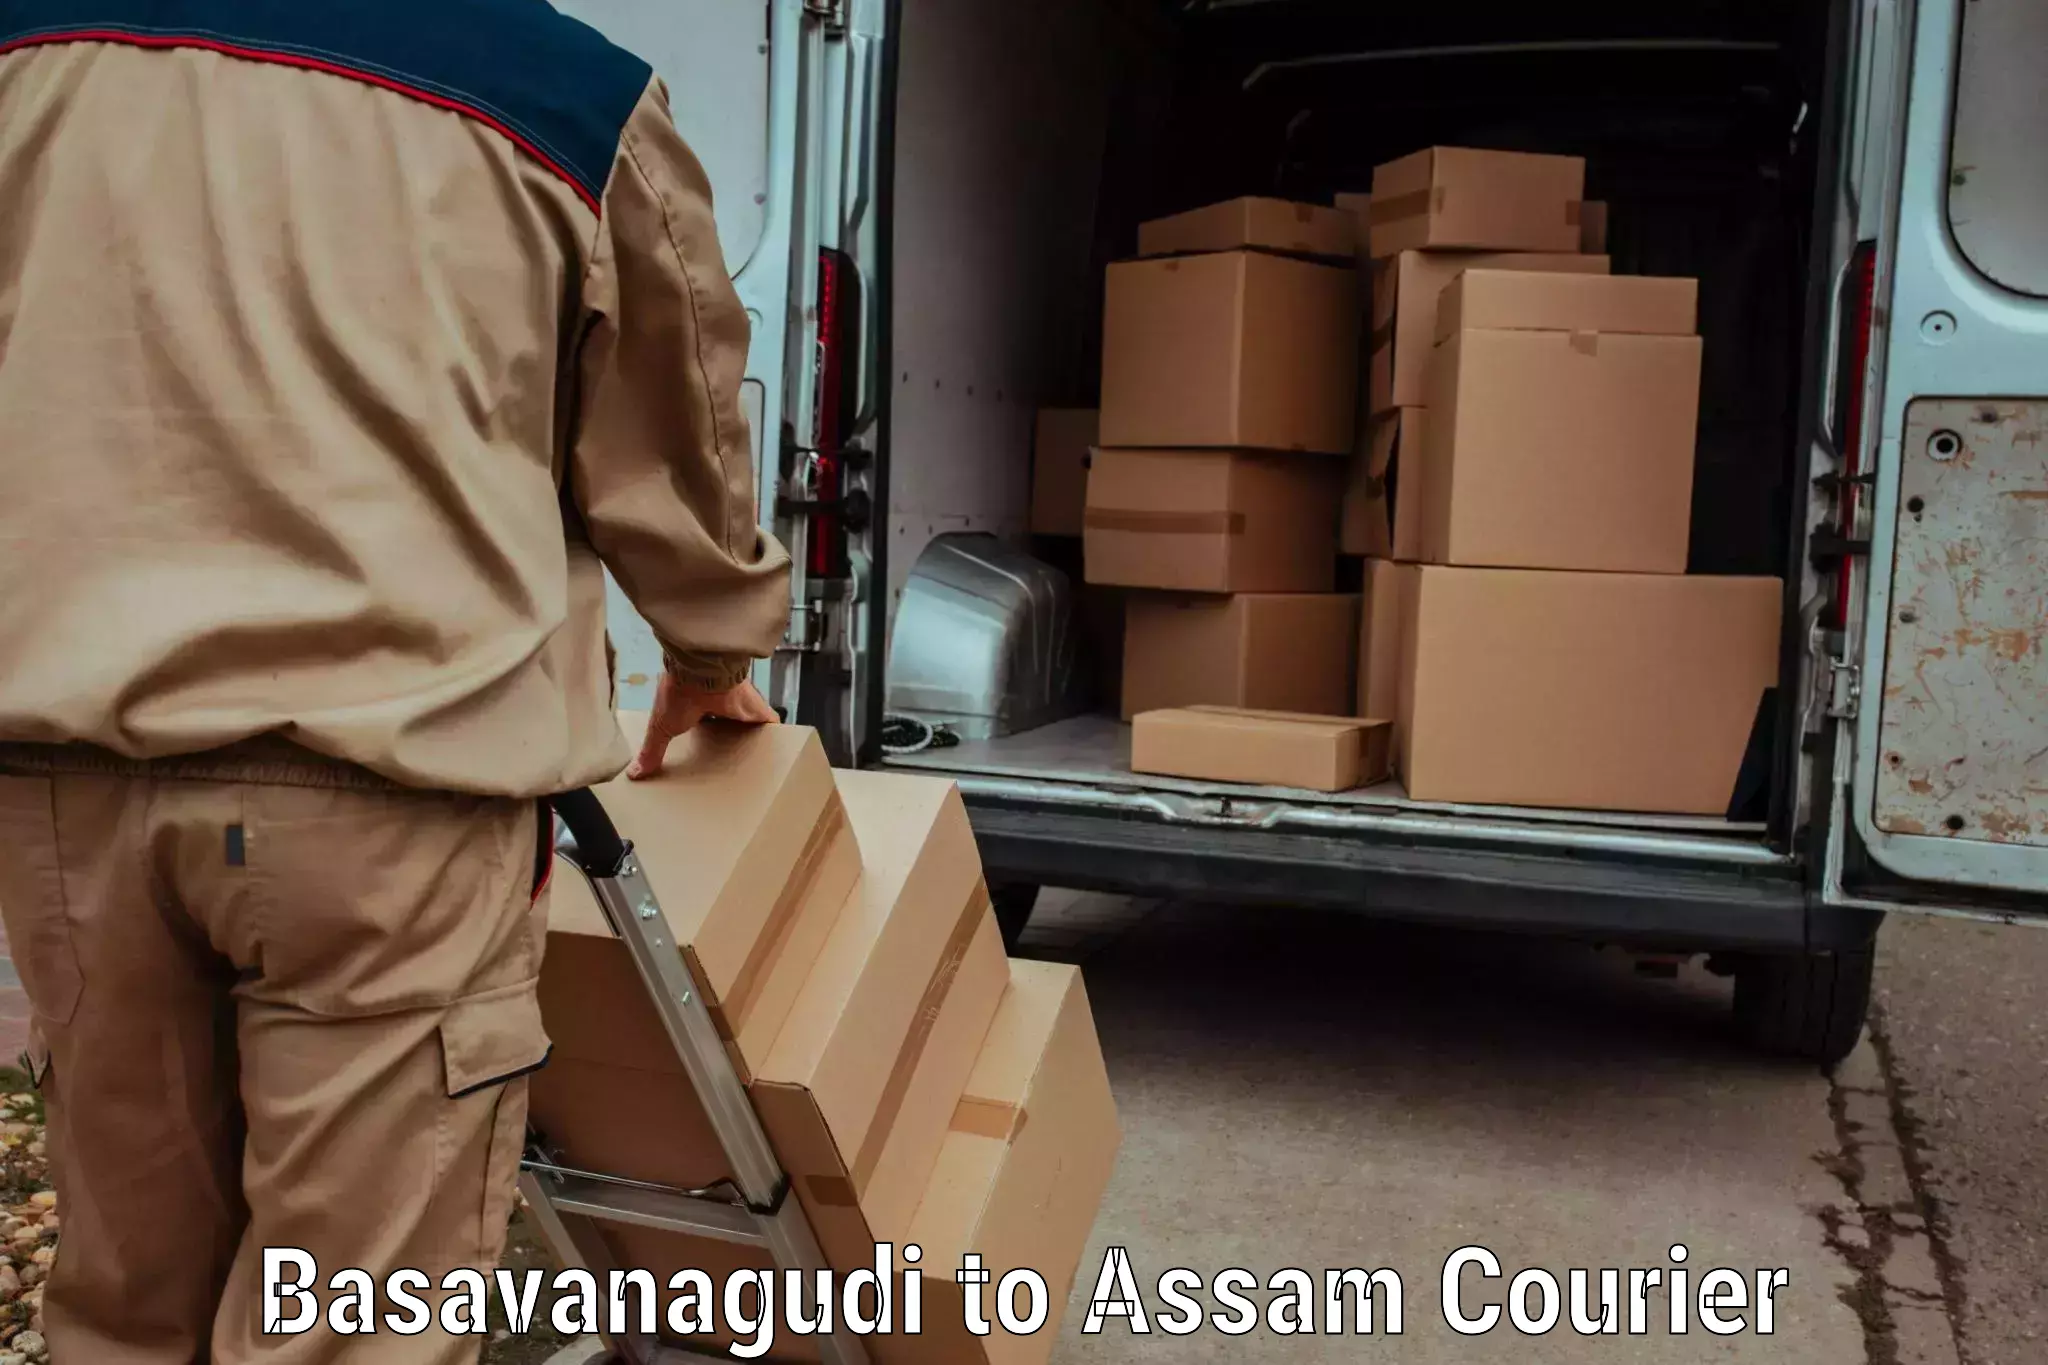 Courier service booking Basavanagudi to Biswanath